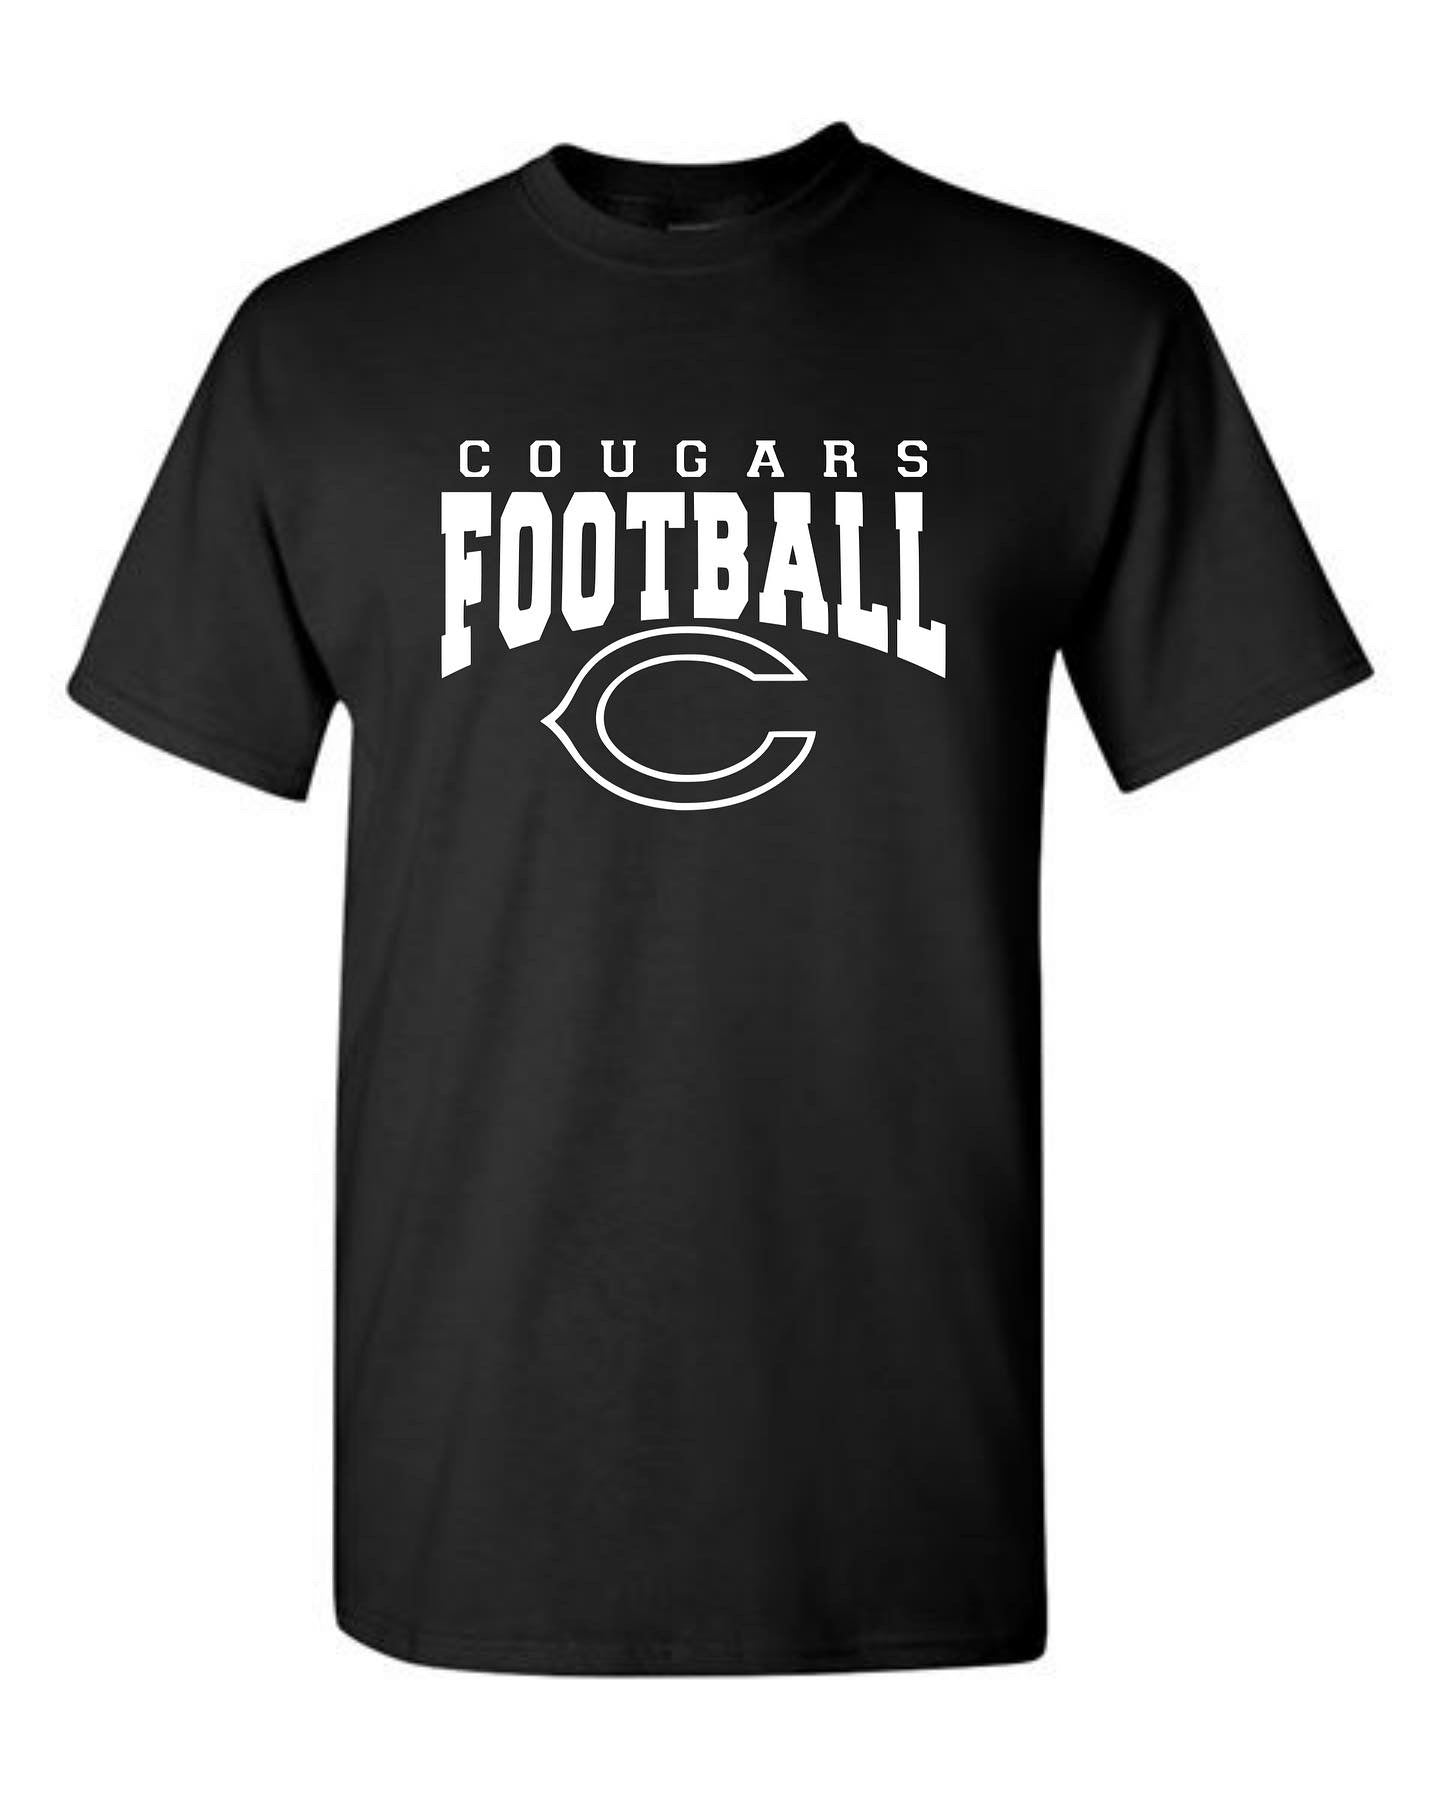 Cougars Football Tshirt